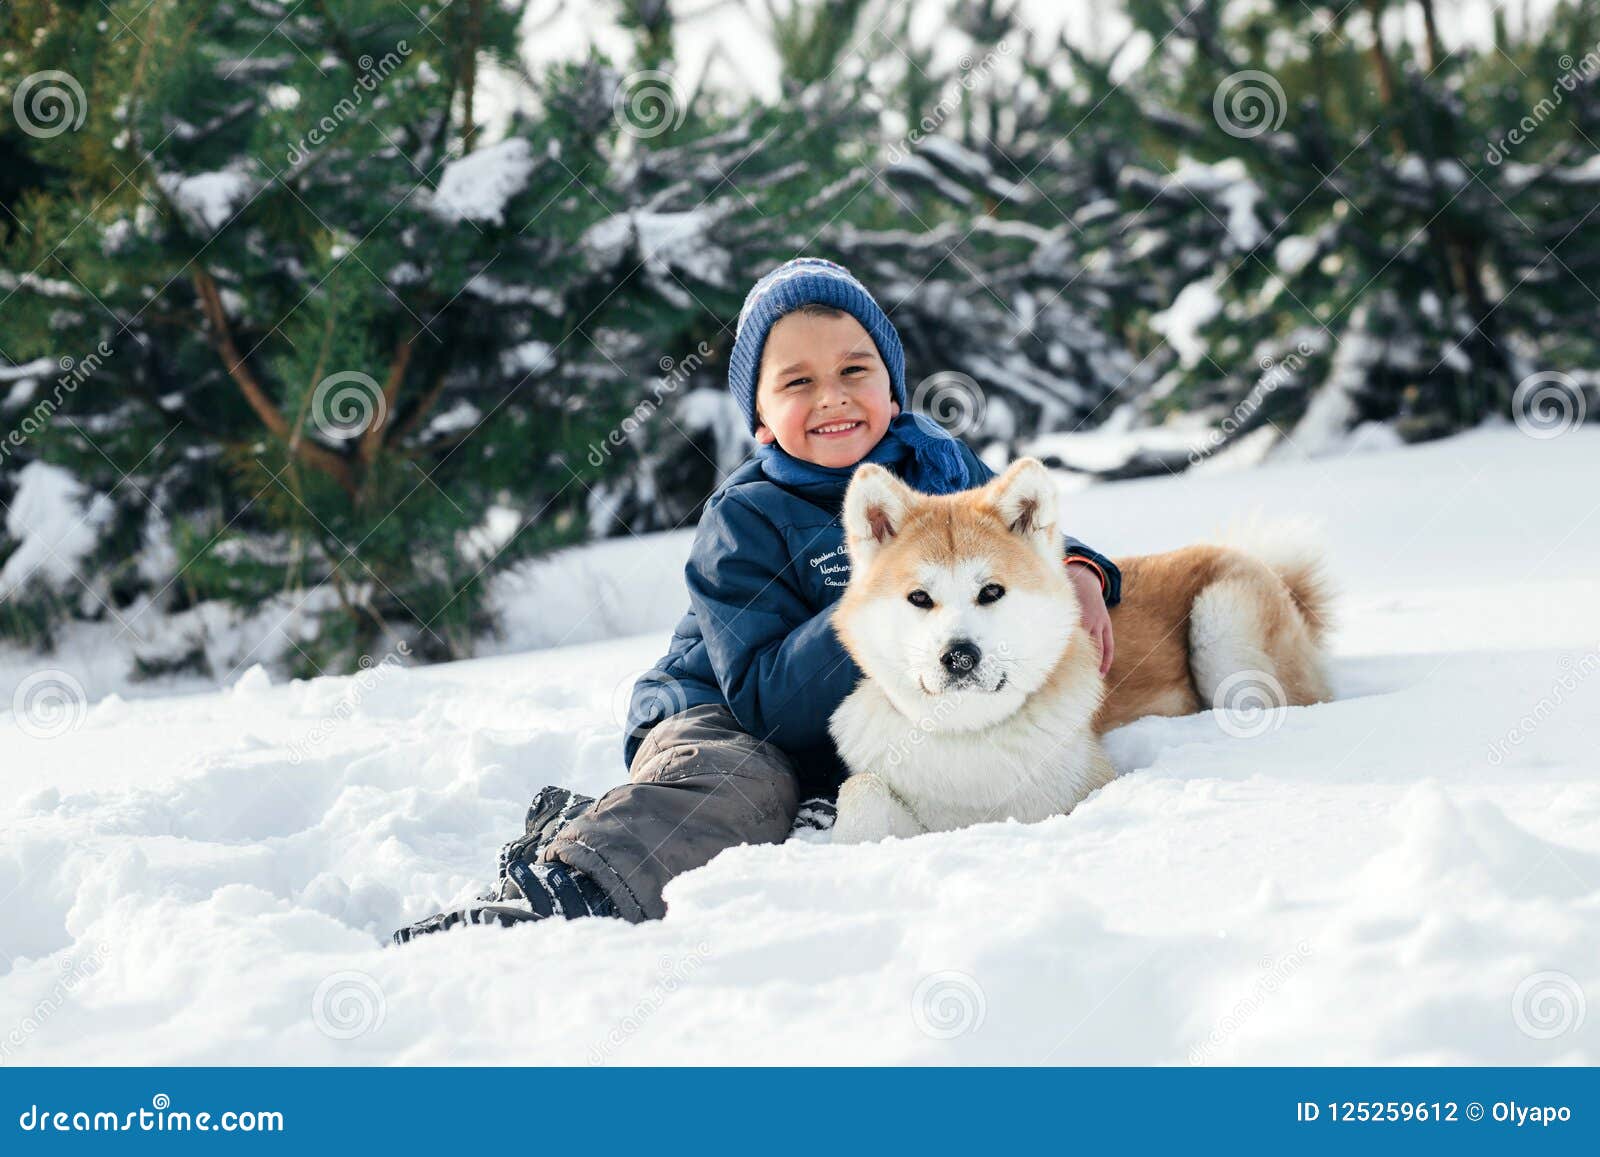 Laufendes mit Akita Inu-Hund an spielen Weihnachtsdes glücklichen Kinderjungen. Laufendes Spielen Weihnachtsdes glücklichen Kinderjungen mit Akita--Inuhund auf weißem Schnee am Wintertag Ein glücklicher Junge, der seinen geliebten Hund, spielend im schneebedeckten Wald umarmt